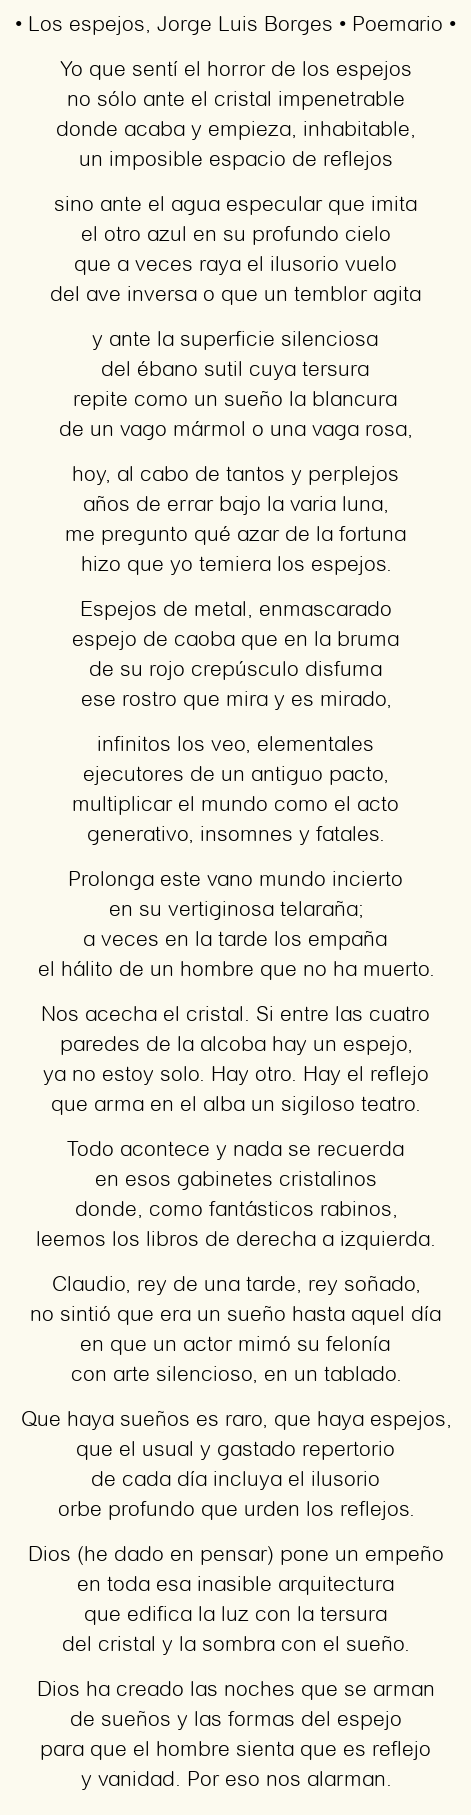 Imagen con el poema Los espejos, por Jorge Luis Borges